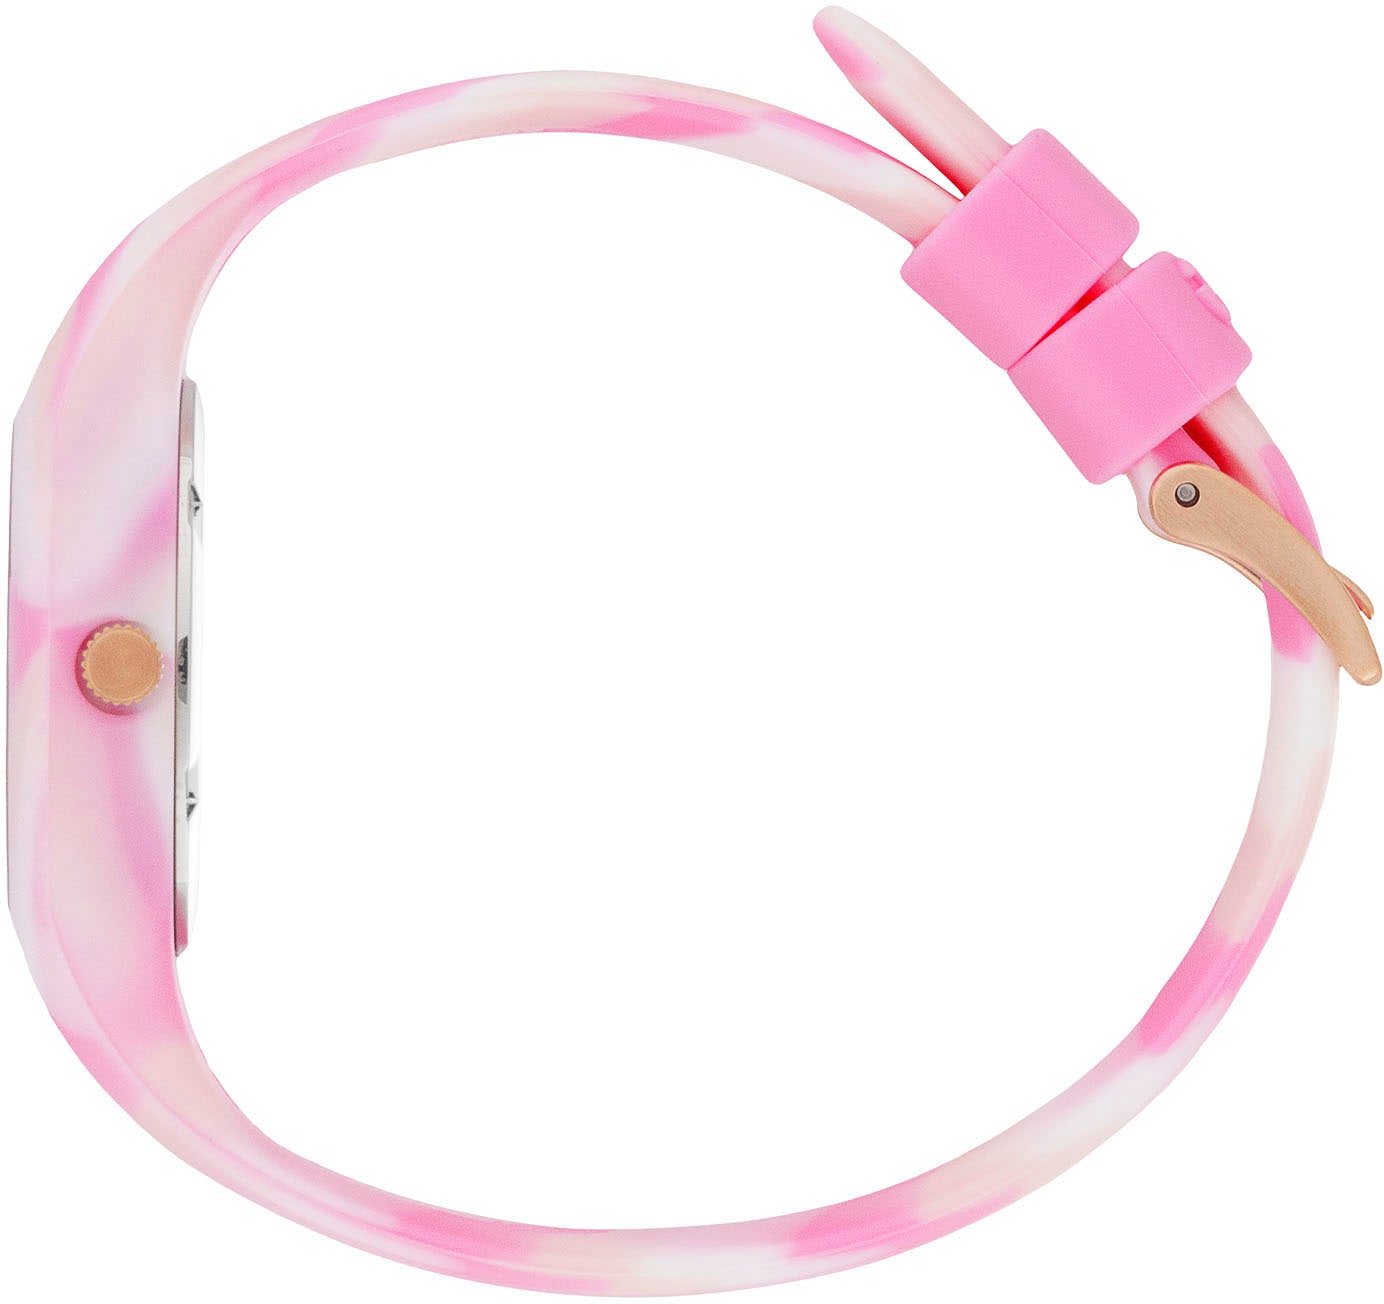 auch - Geschenk als Extra-Small | Onlineshop - dye 021011«, 3H, I\'m and Quarzuhr Pink walking tie ice-watch shades im ideal »ICE -